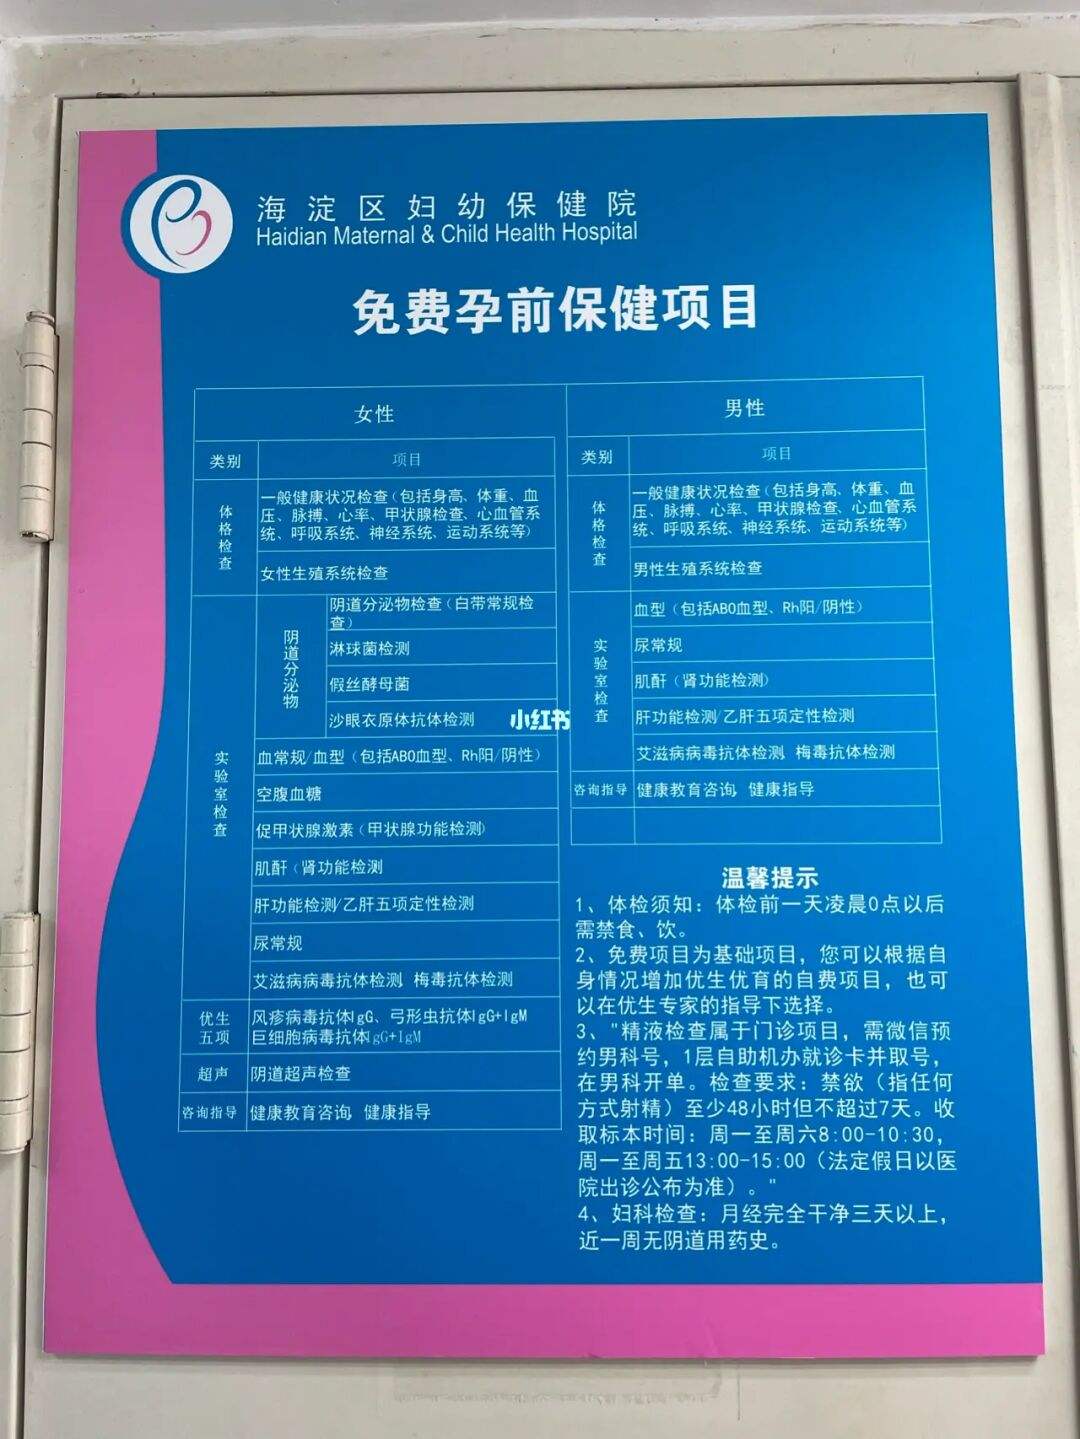 包含北京市海淀妇幼保健院跑腿代挂号，帮您预约权威专家的词条